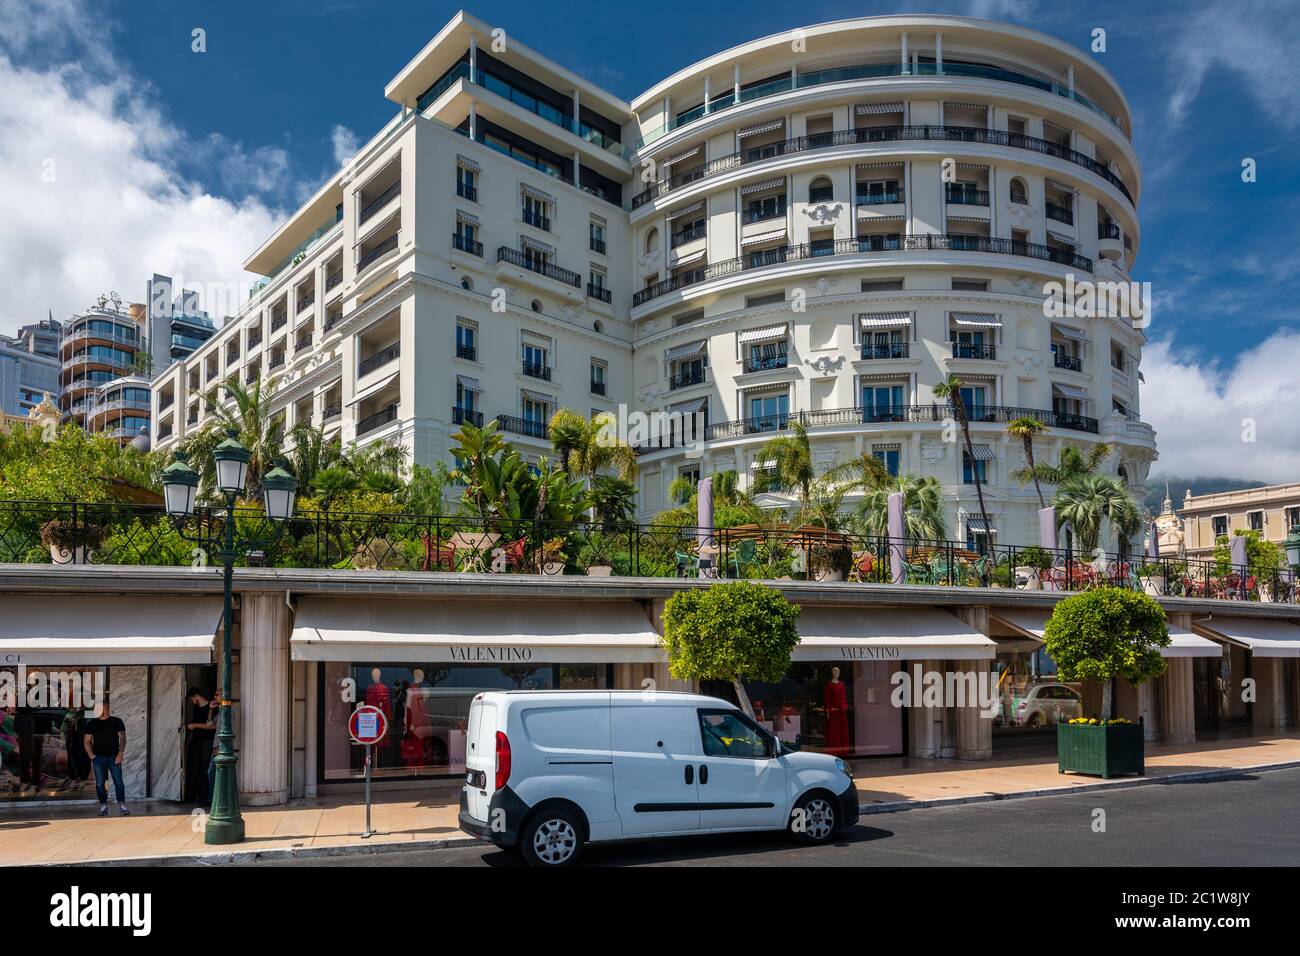 Monte Carlo, Monaco - 13 Giugno 2019 : Hotel de Paris con negozi di lusso. Uno dei luoghi preferiti per i ricchi. Foto Stock